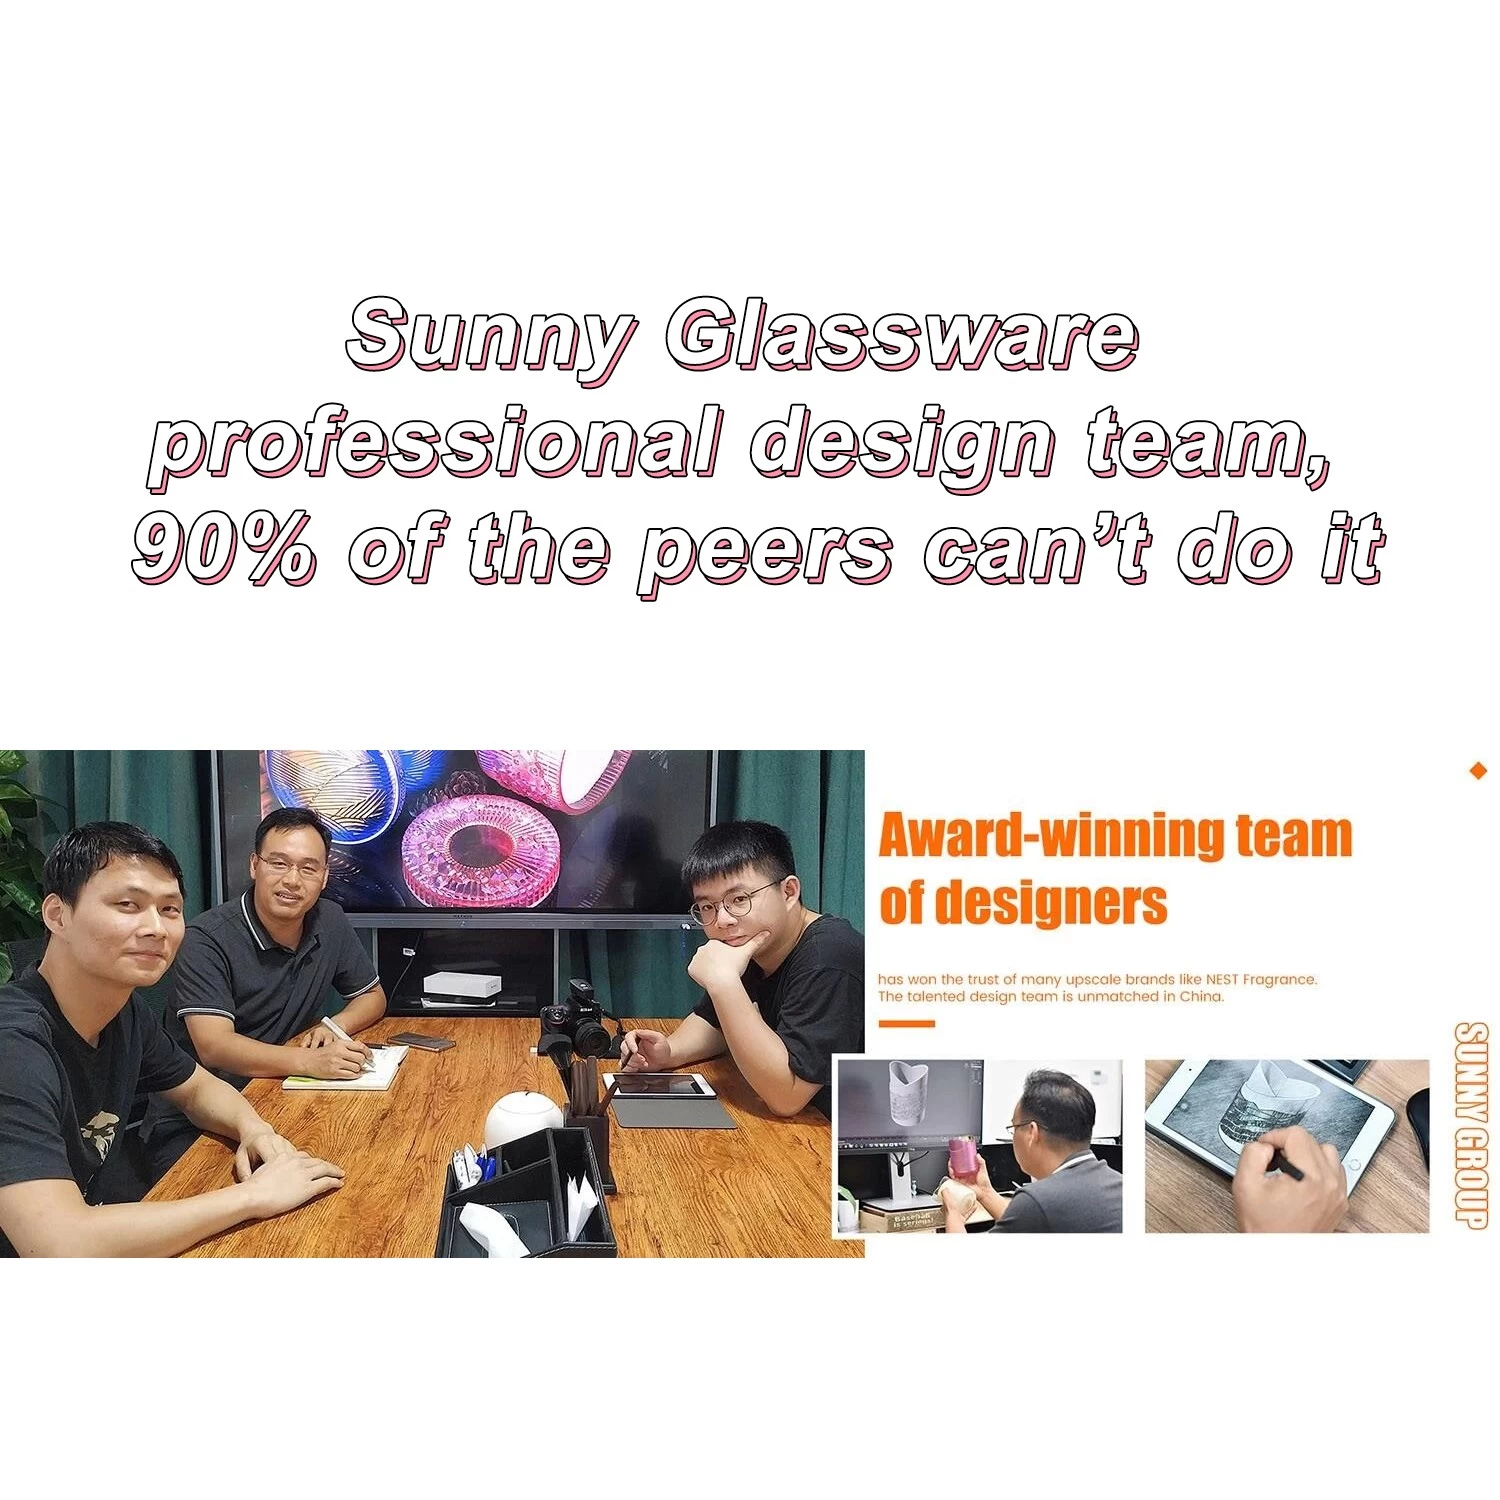 Das professionelle Designteam von Sunny Glassware, 90 % der Kollegen können es nicht